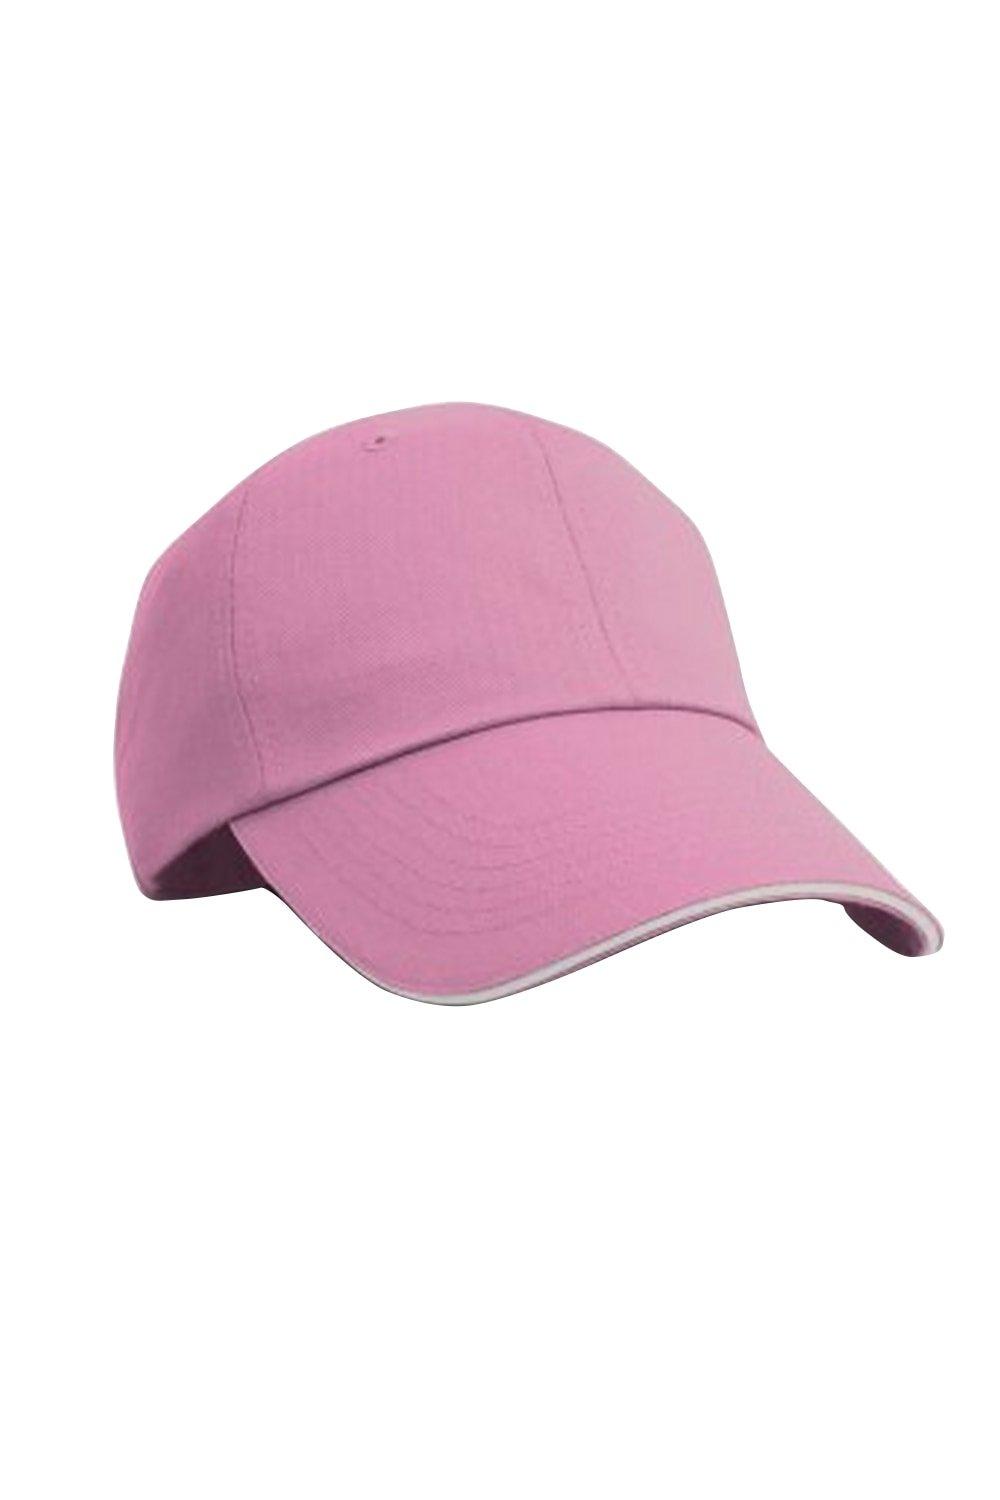 Бейсбольная кепка контрастного цвета с узором «елочка» и козырьком Result, розовый